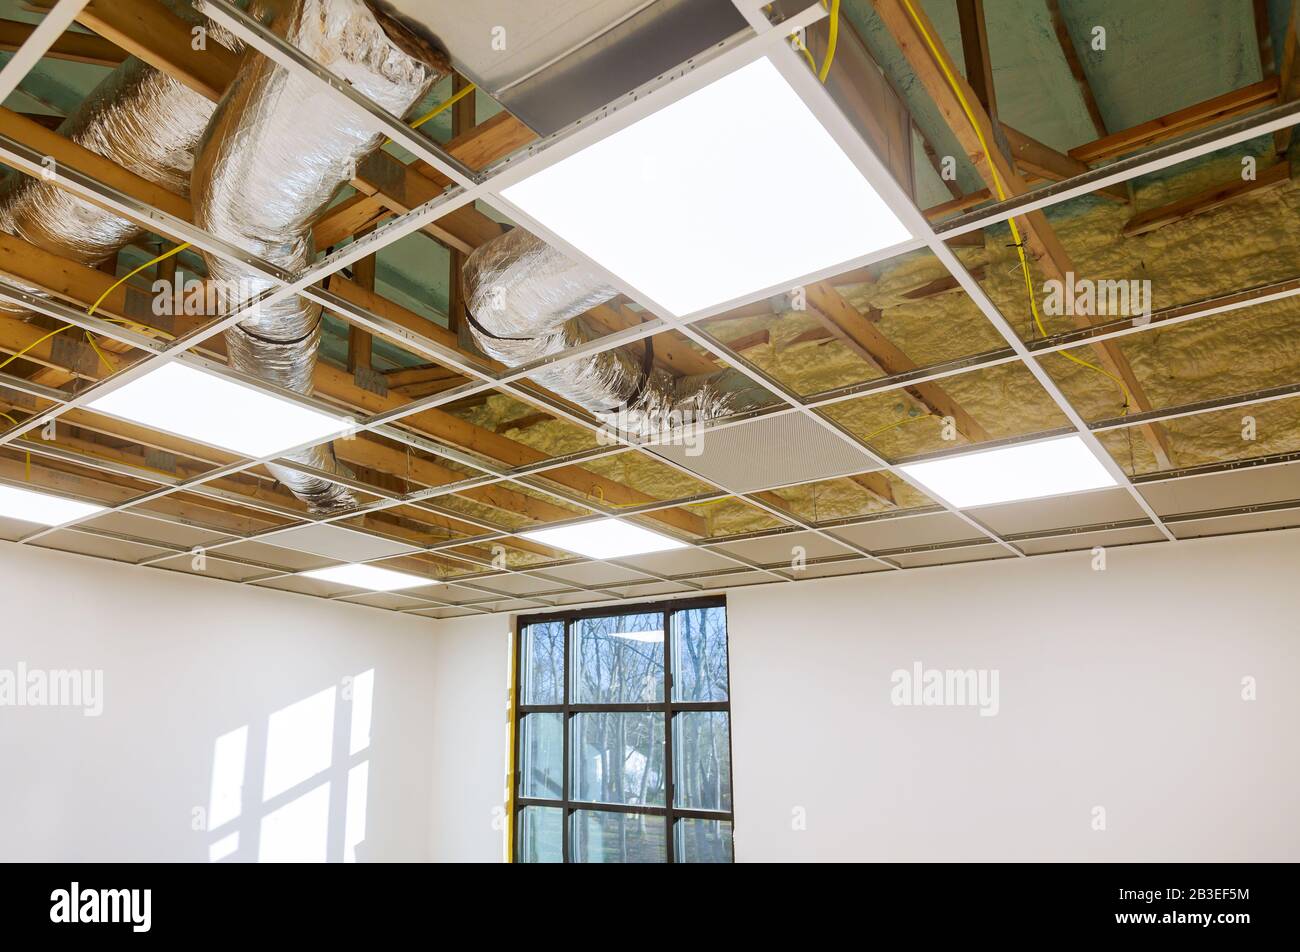 Système de conditionnement d'air attaché à plafond mansardé, mousse d'isolation en plastique d'une nouvelle maison en cours d'installation d'évents CVC Banque D'Images